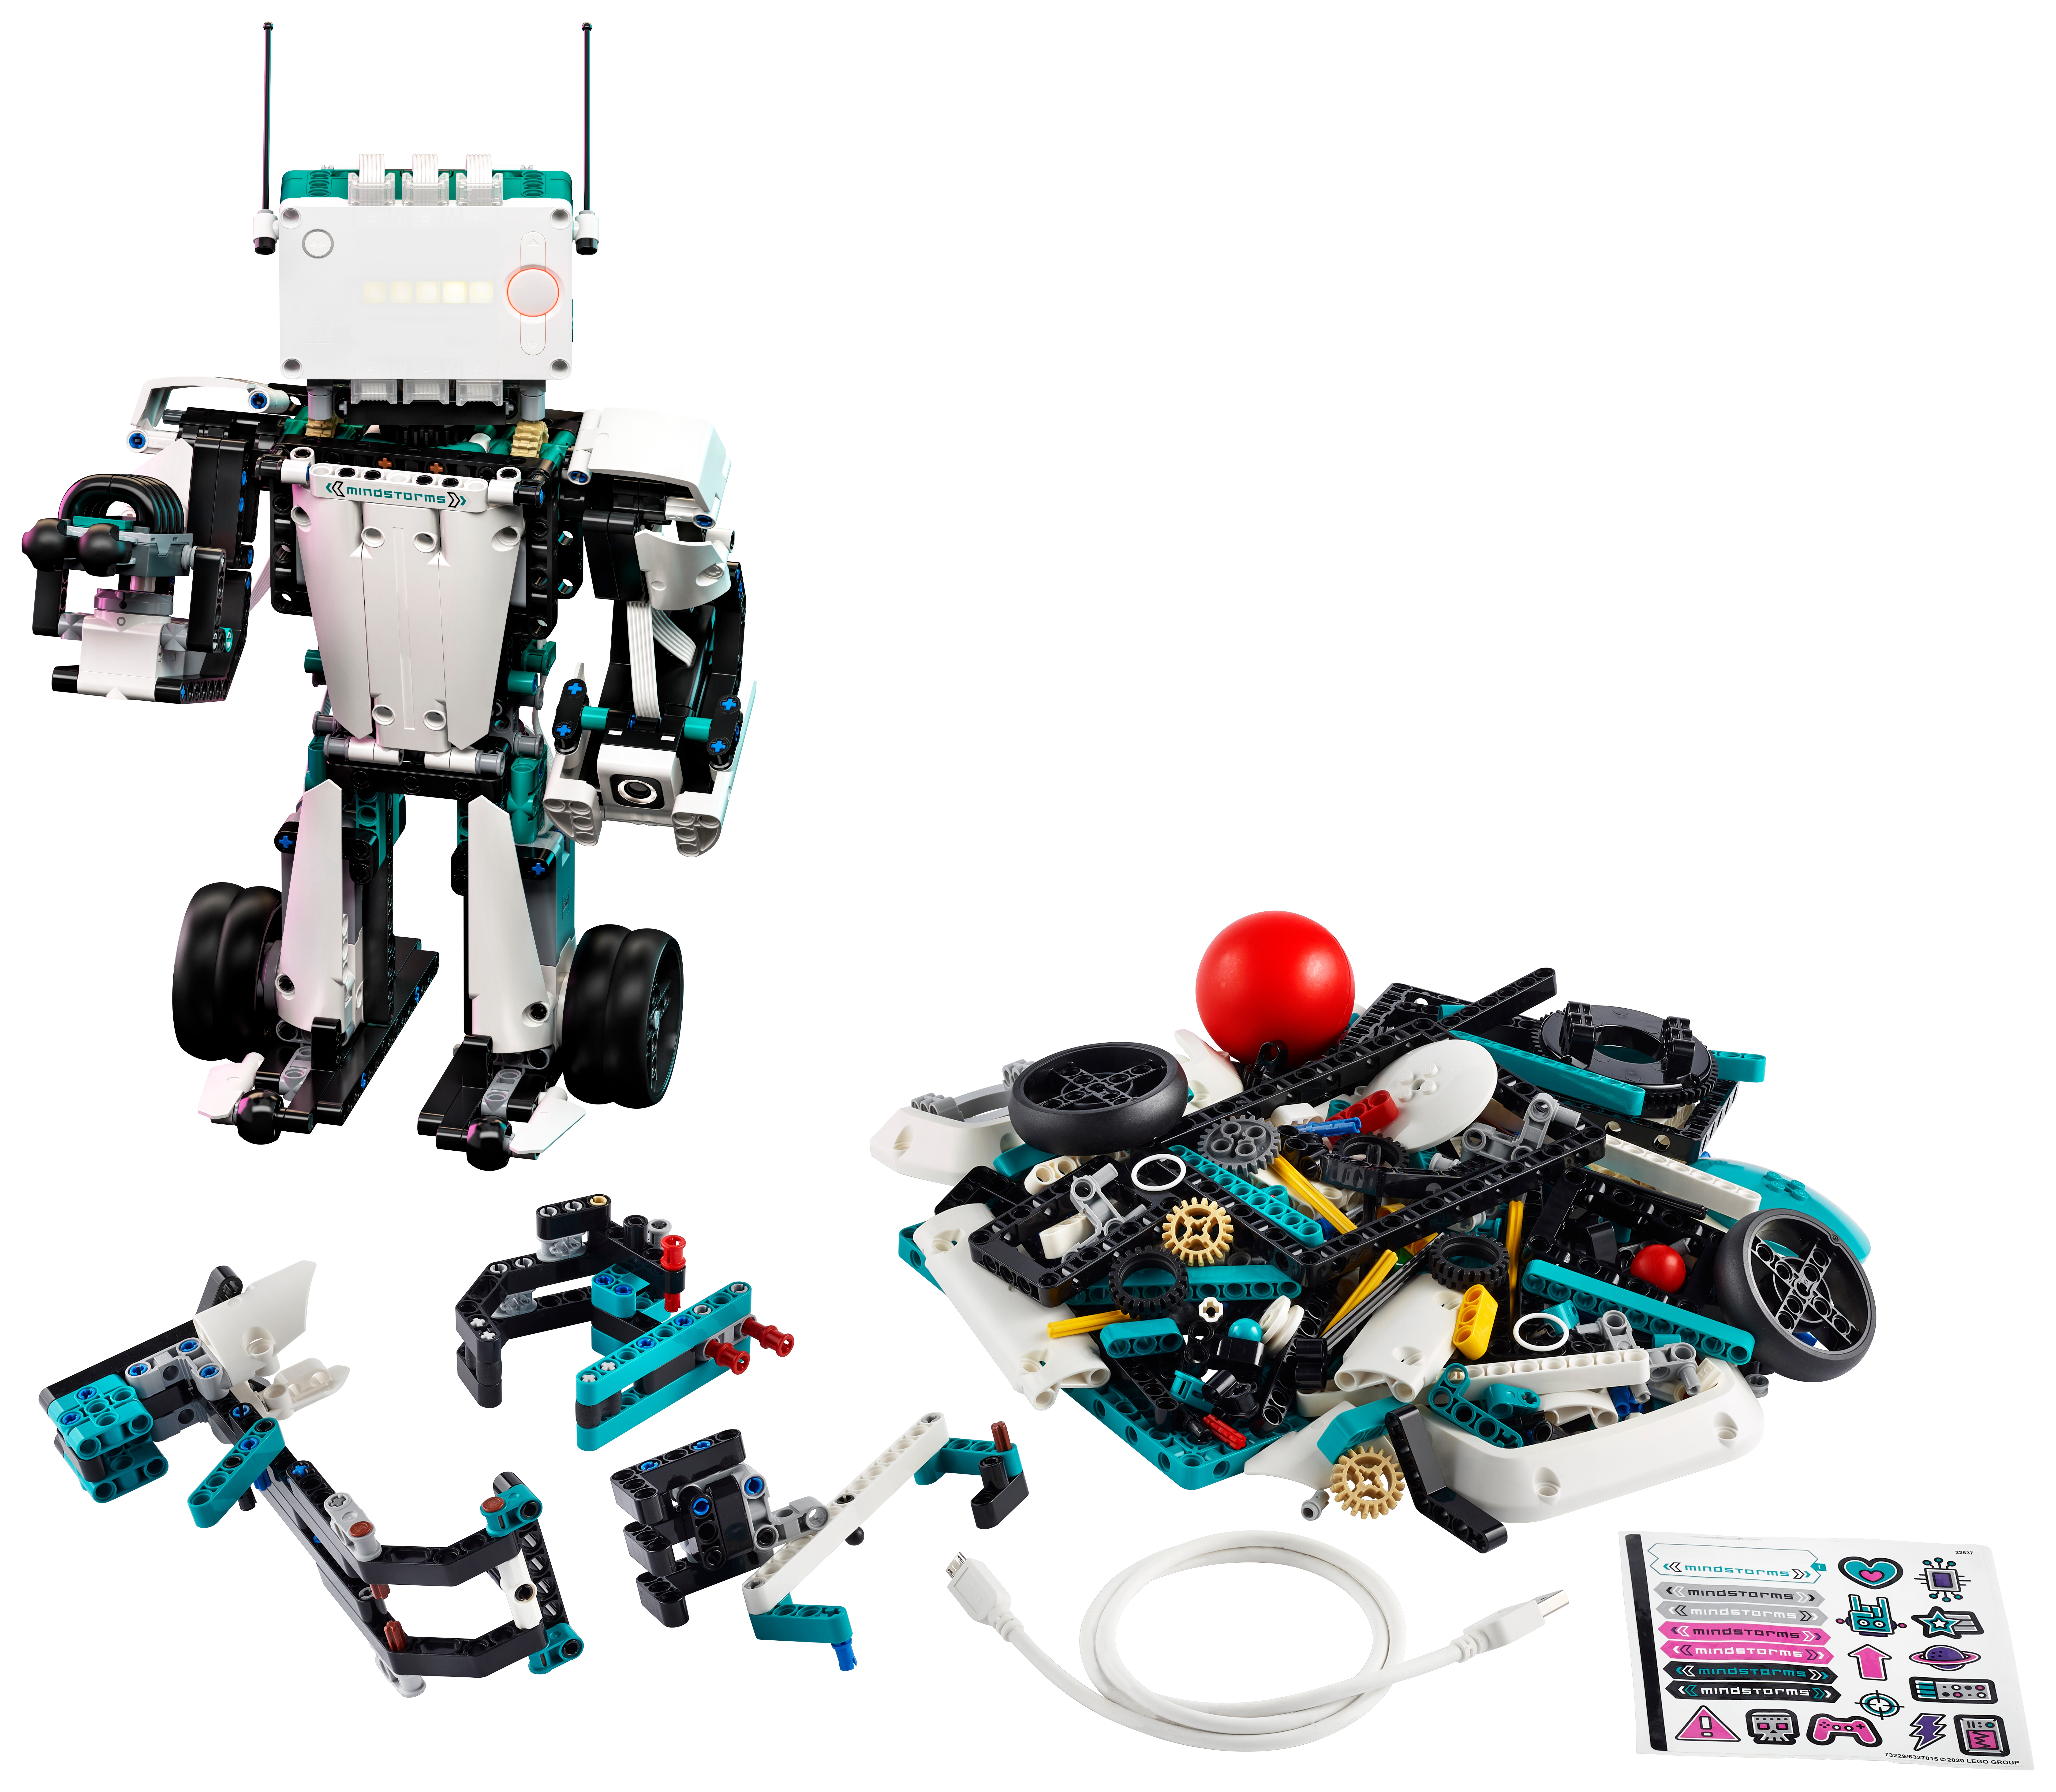 Kan ikke lide nødvendig Giv rettigheder LEGO MINDSTORMS Robot Inventor - About Us - LEGO.com